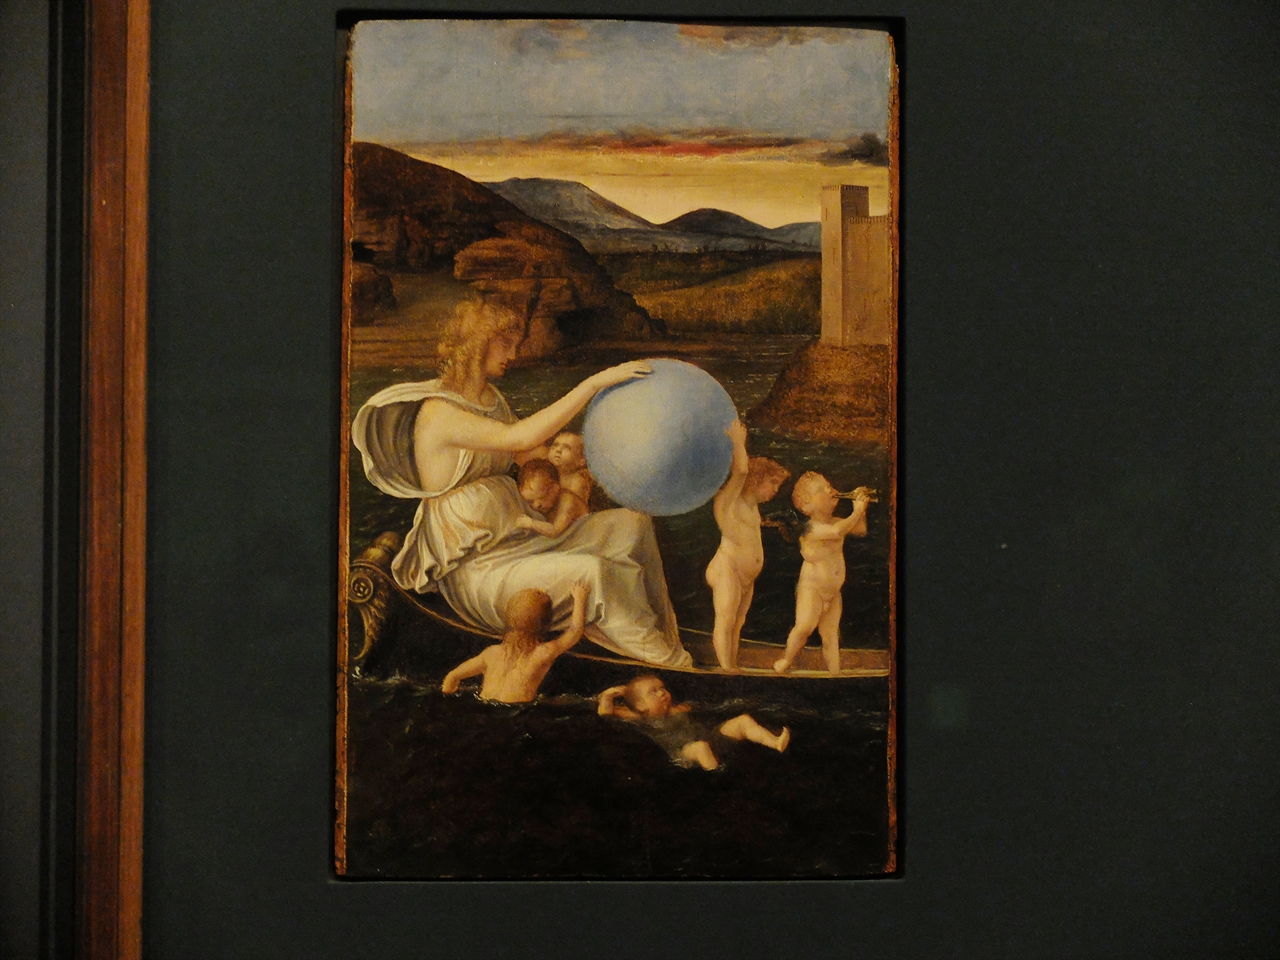 조반니 벨리니, '우울의 알레고리', 베네치아 아카데미아 미술관. 다섯개의 작은 패널로 이루어진 조반니 벨리니의 '알레고리' 연작 중 한 편입니다.